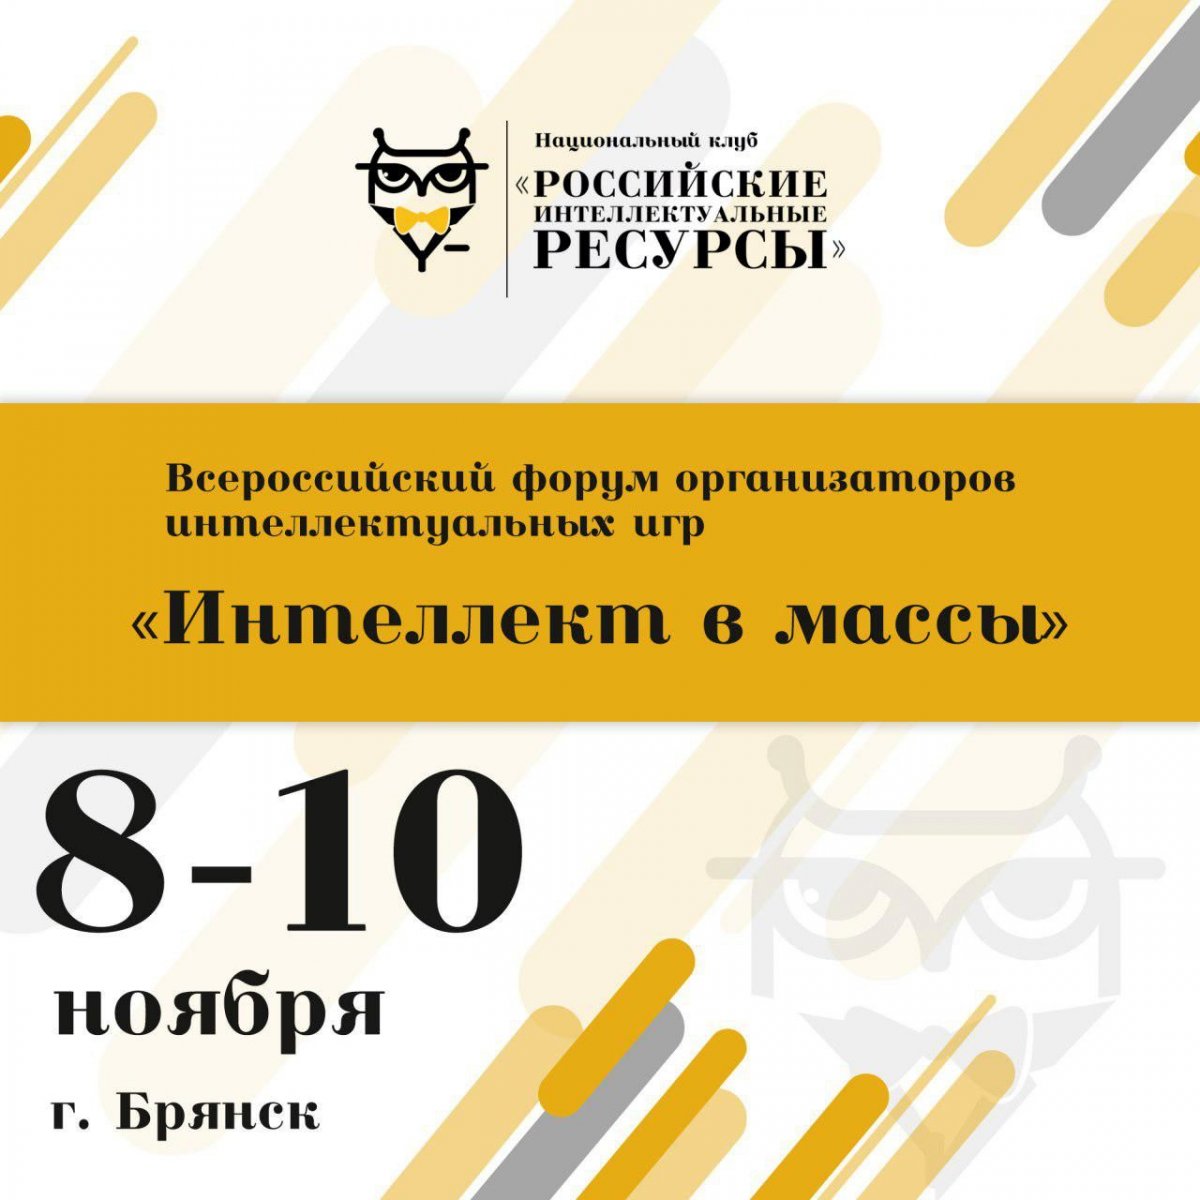 С 8 по 10 ноября 2018 г. в Брянске пройдет Всероссийский форум организаторов интеллектуальных игр «Интеллект в массы».